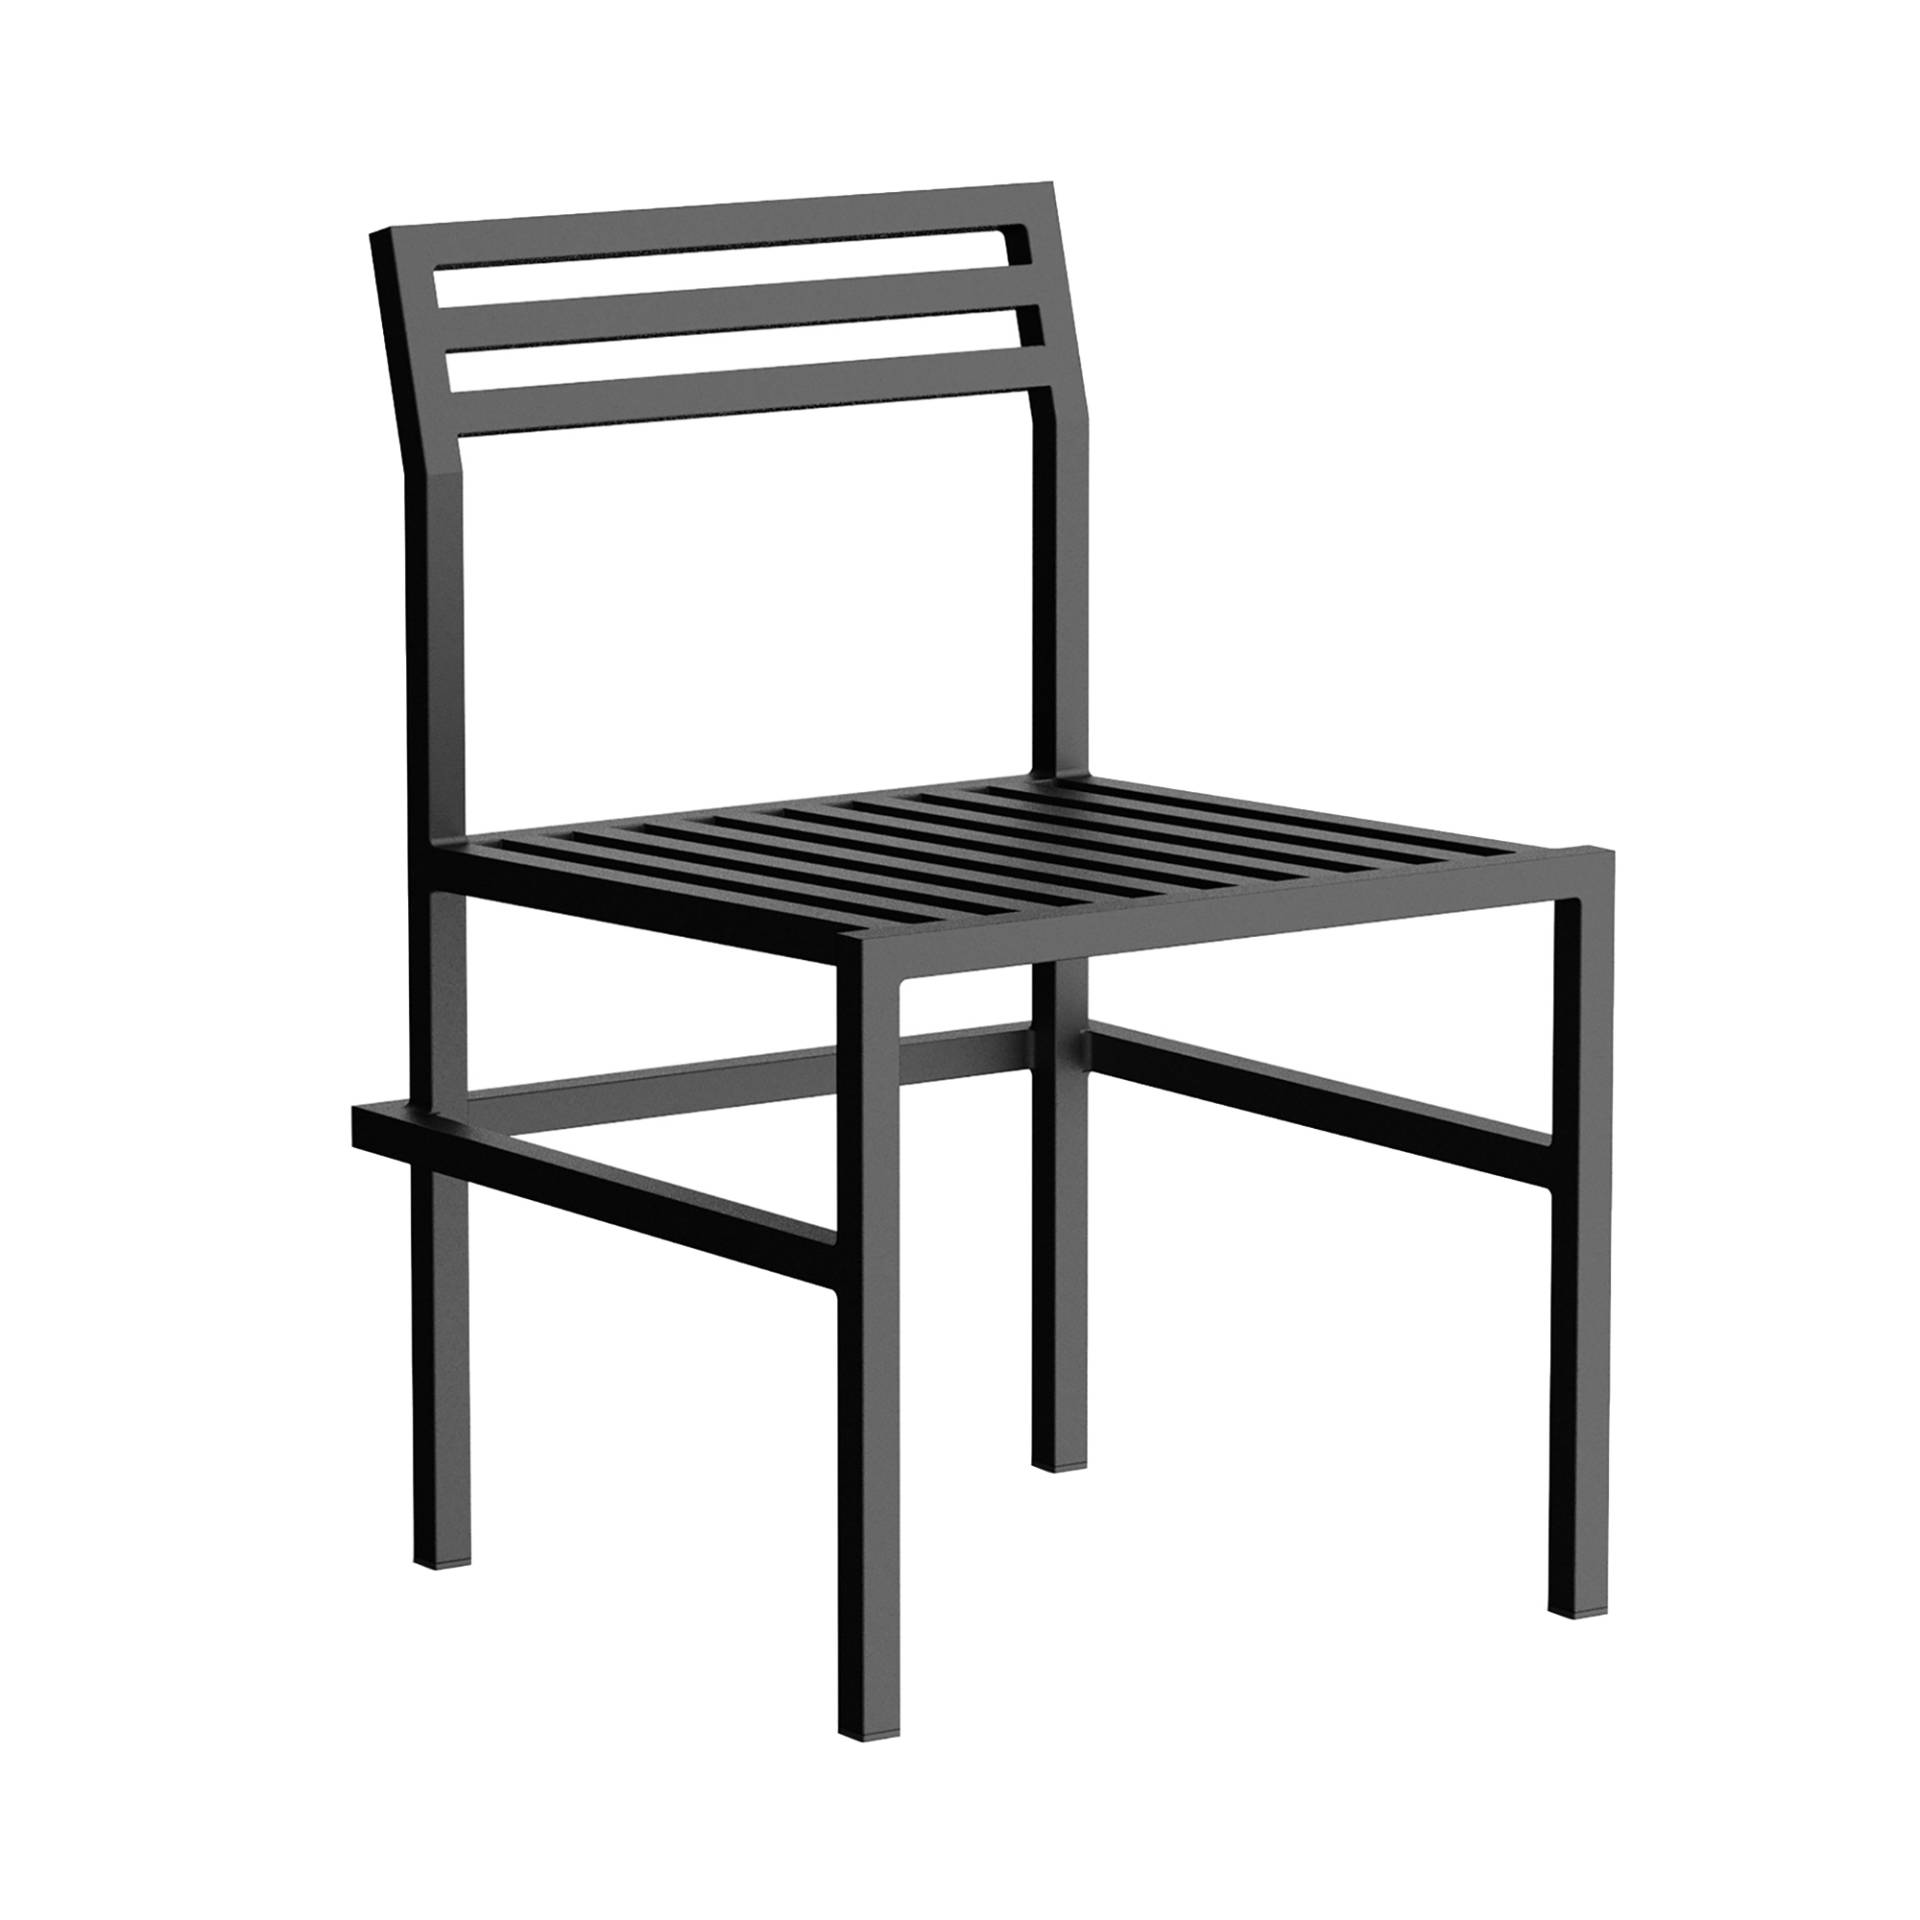 Nine - 19 Outdoors Esstisch Stuhl - schwarz RAL 9011/pulverbeschichtet/BxHxT 52,5x79,5x54,5cm/geprüft gemäß BS EN 581 von Nine